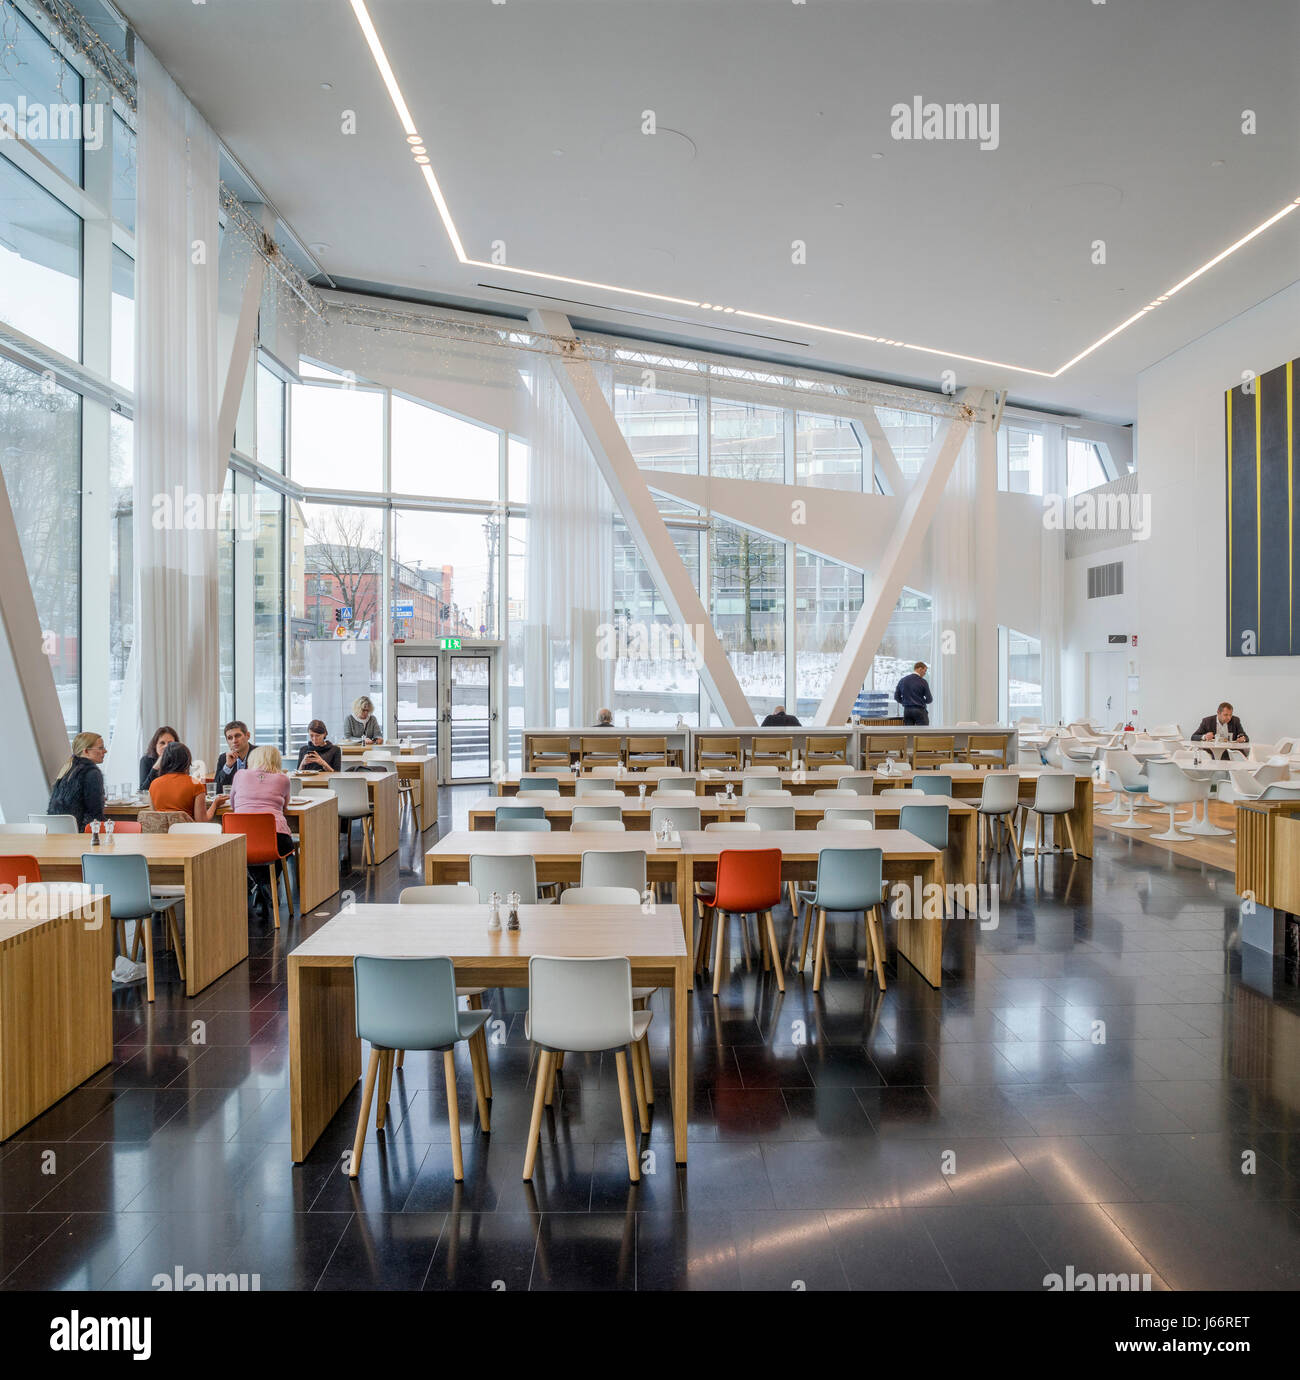 Mensa cafe ristorante con tavoli comunali e finestra a parete. Swedbank sede a Stoccolma Stoccolma, Svezia. Architetto: 3xn architetti, 2015. Foto Stock